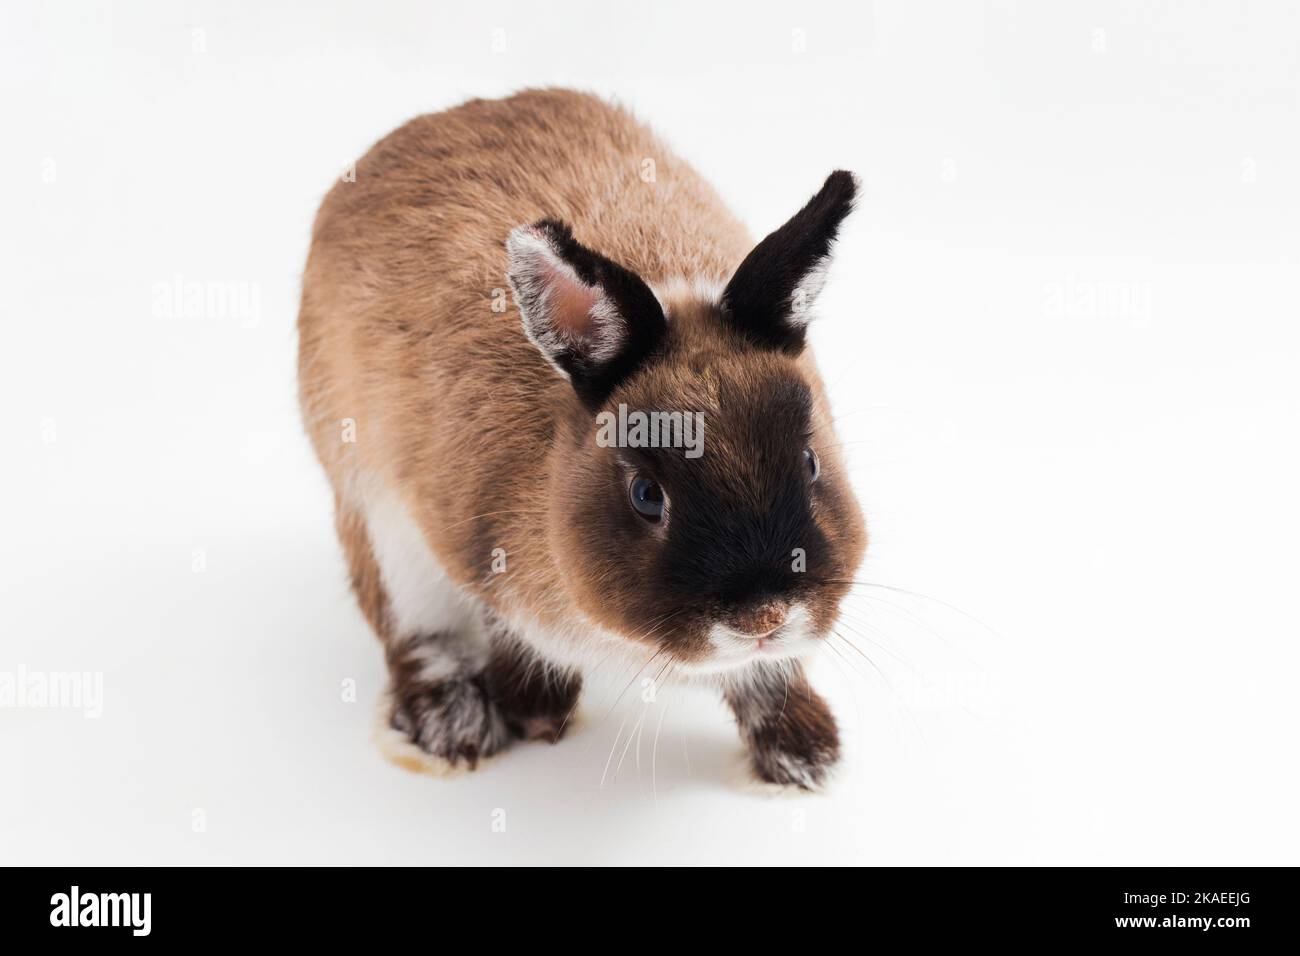 Netherland Dwarf rabbit isolated on white background Stock Photo